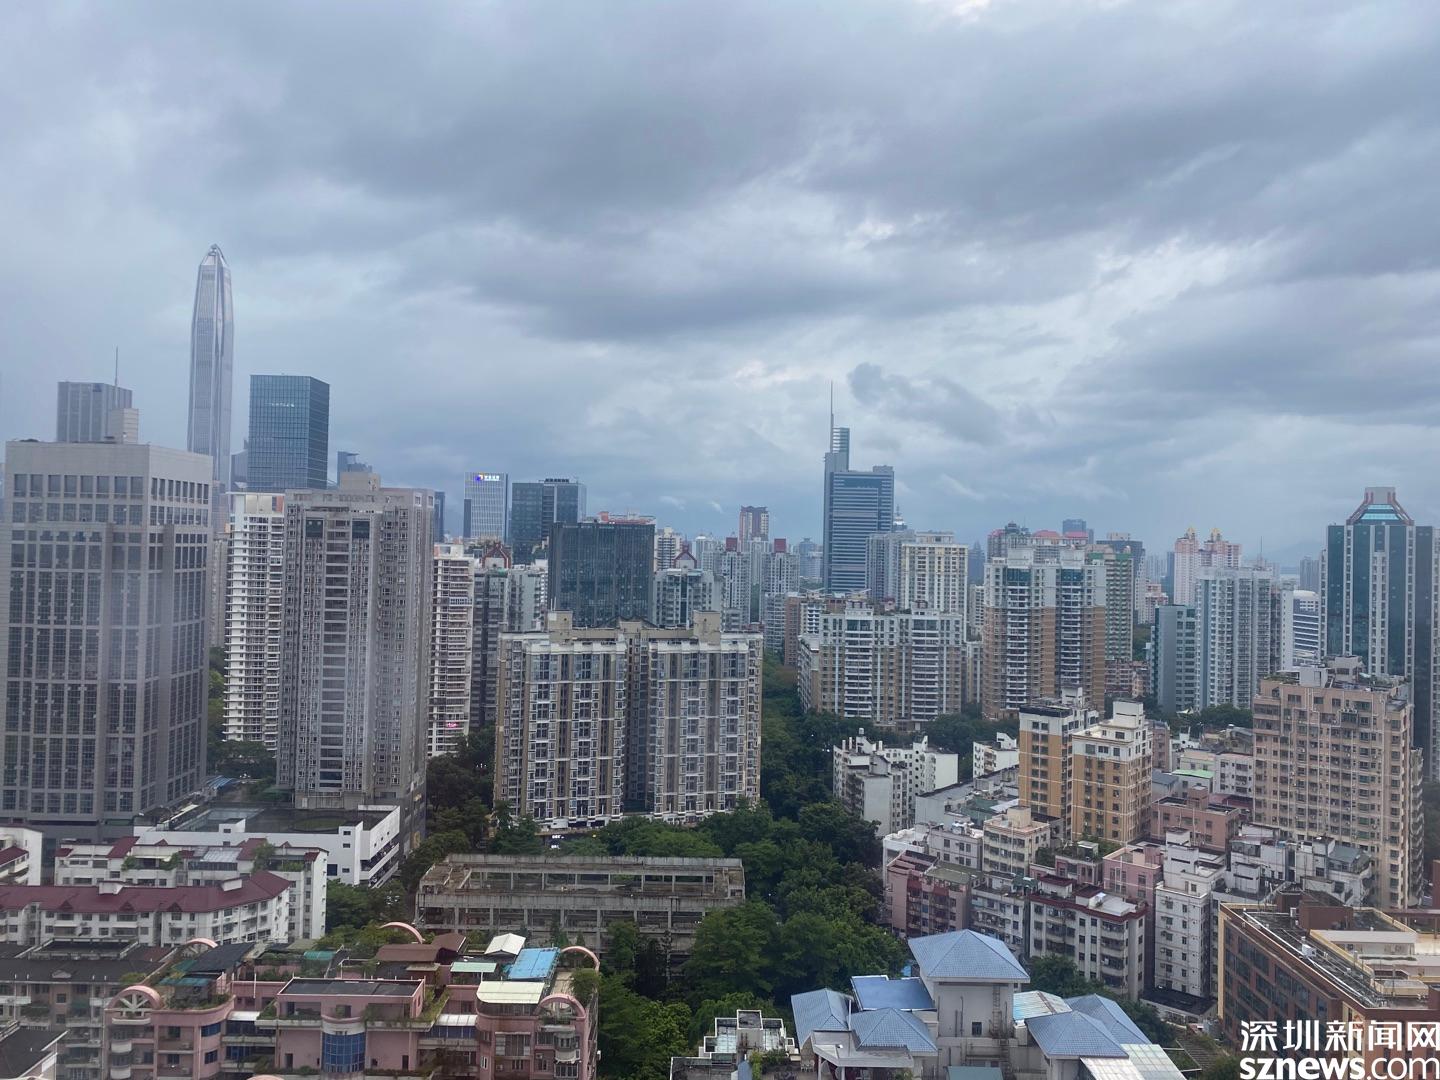 8月以来深圳强降雨多发地质灾害风险高 9-10日仍有局地暴雨